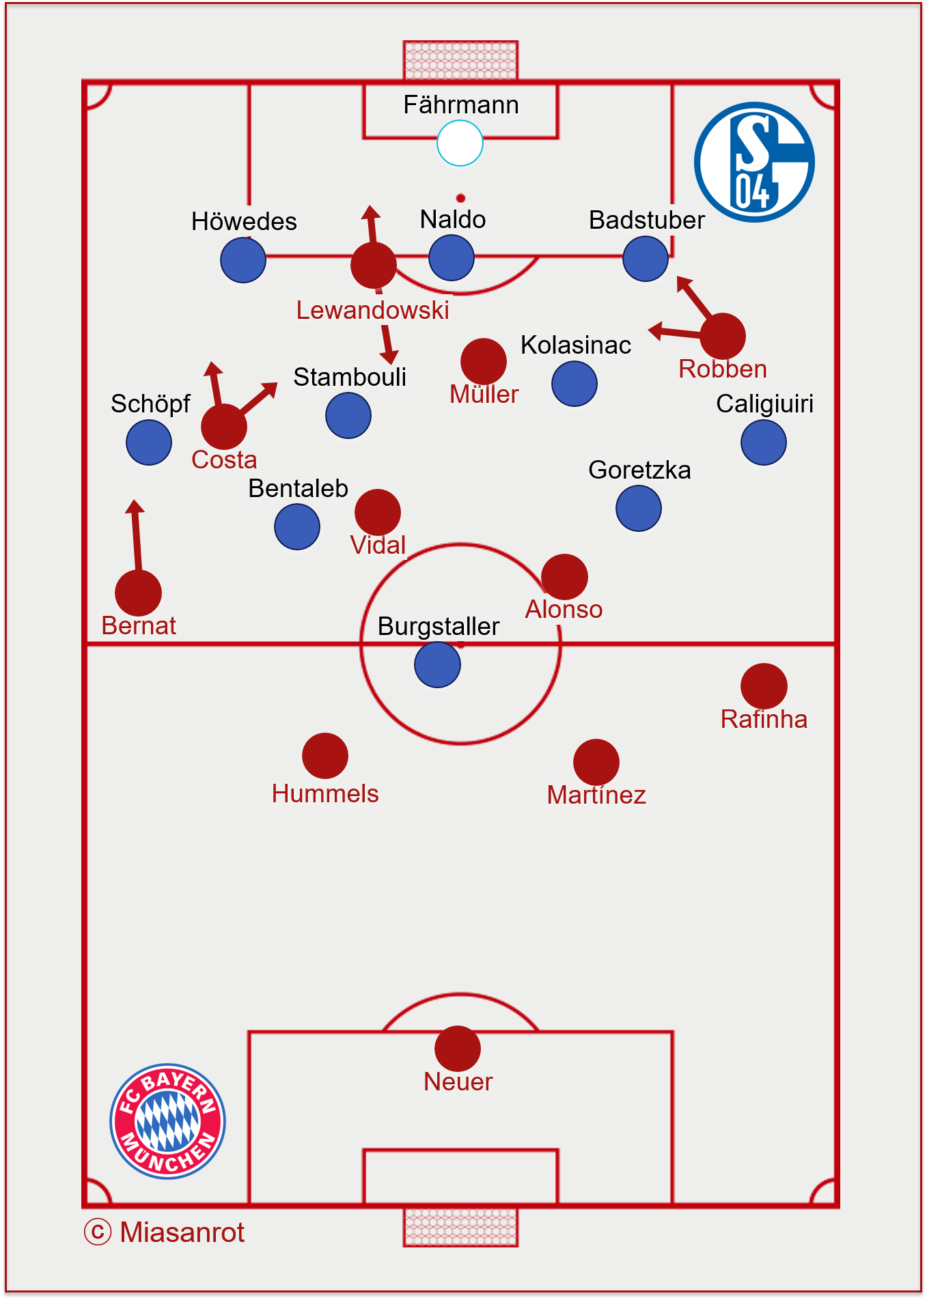 Bayern Munich vs Schalke 04, basic formations